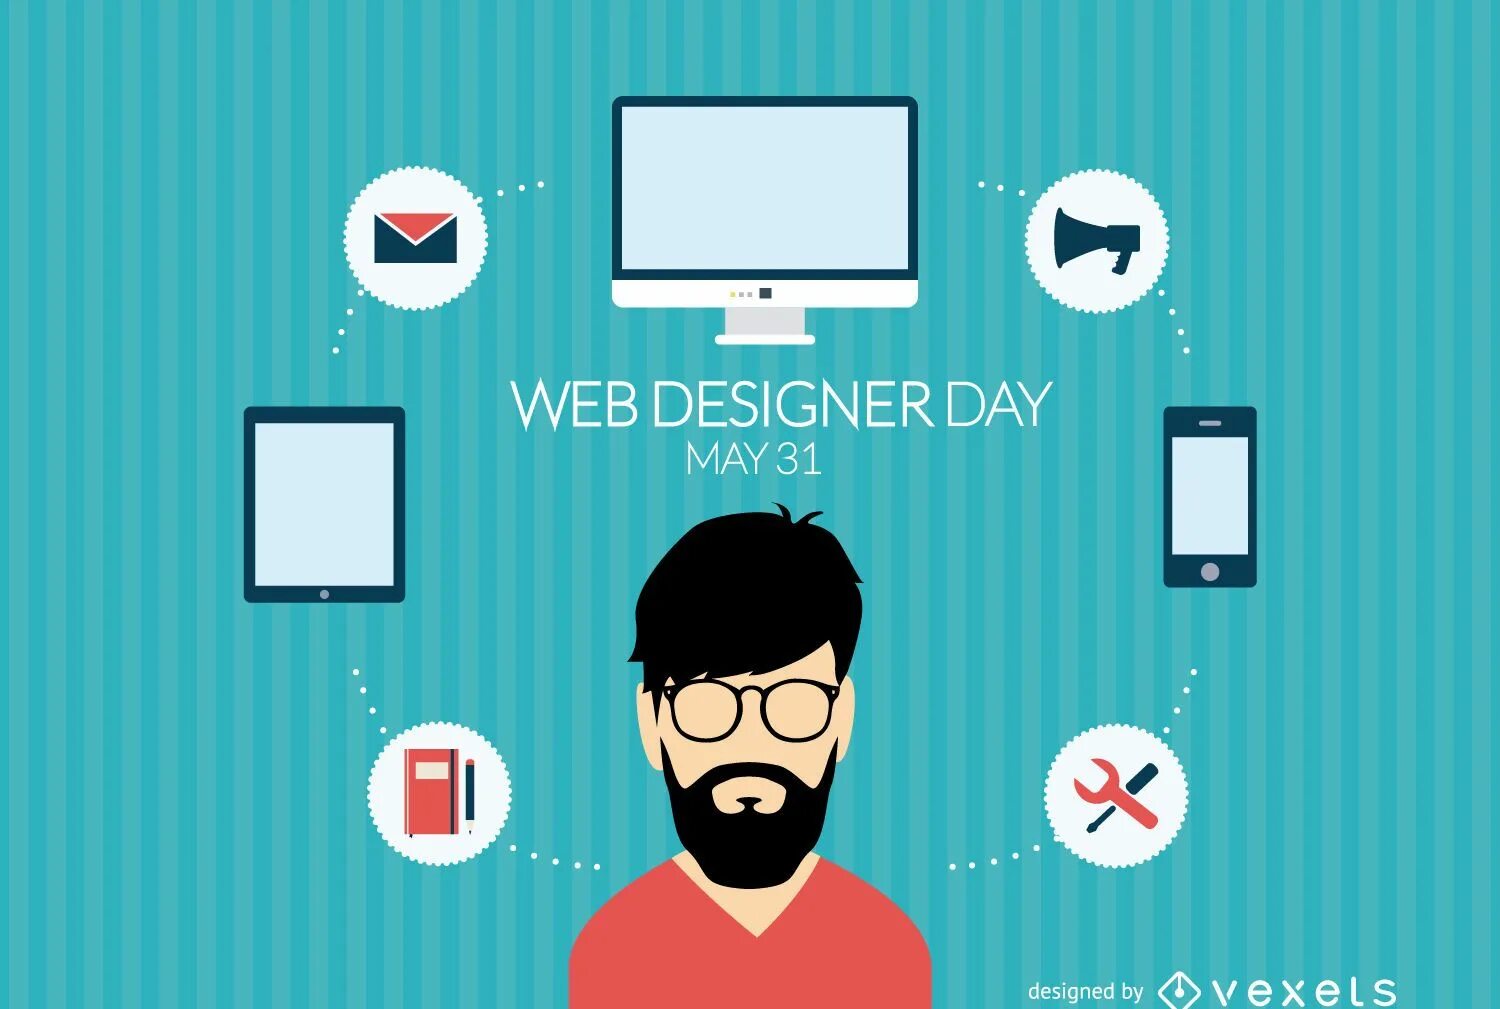 Web design is. Веб дизайнер. Профессия веб дизайнер. Портфолио веб дизайнера. Программист веб дизайнер.